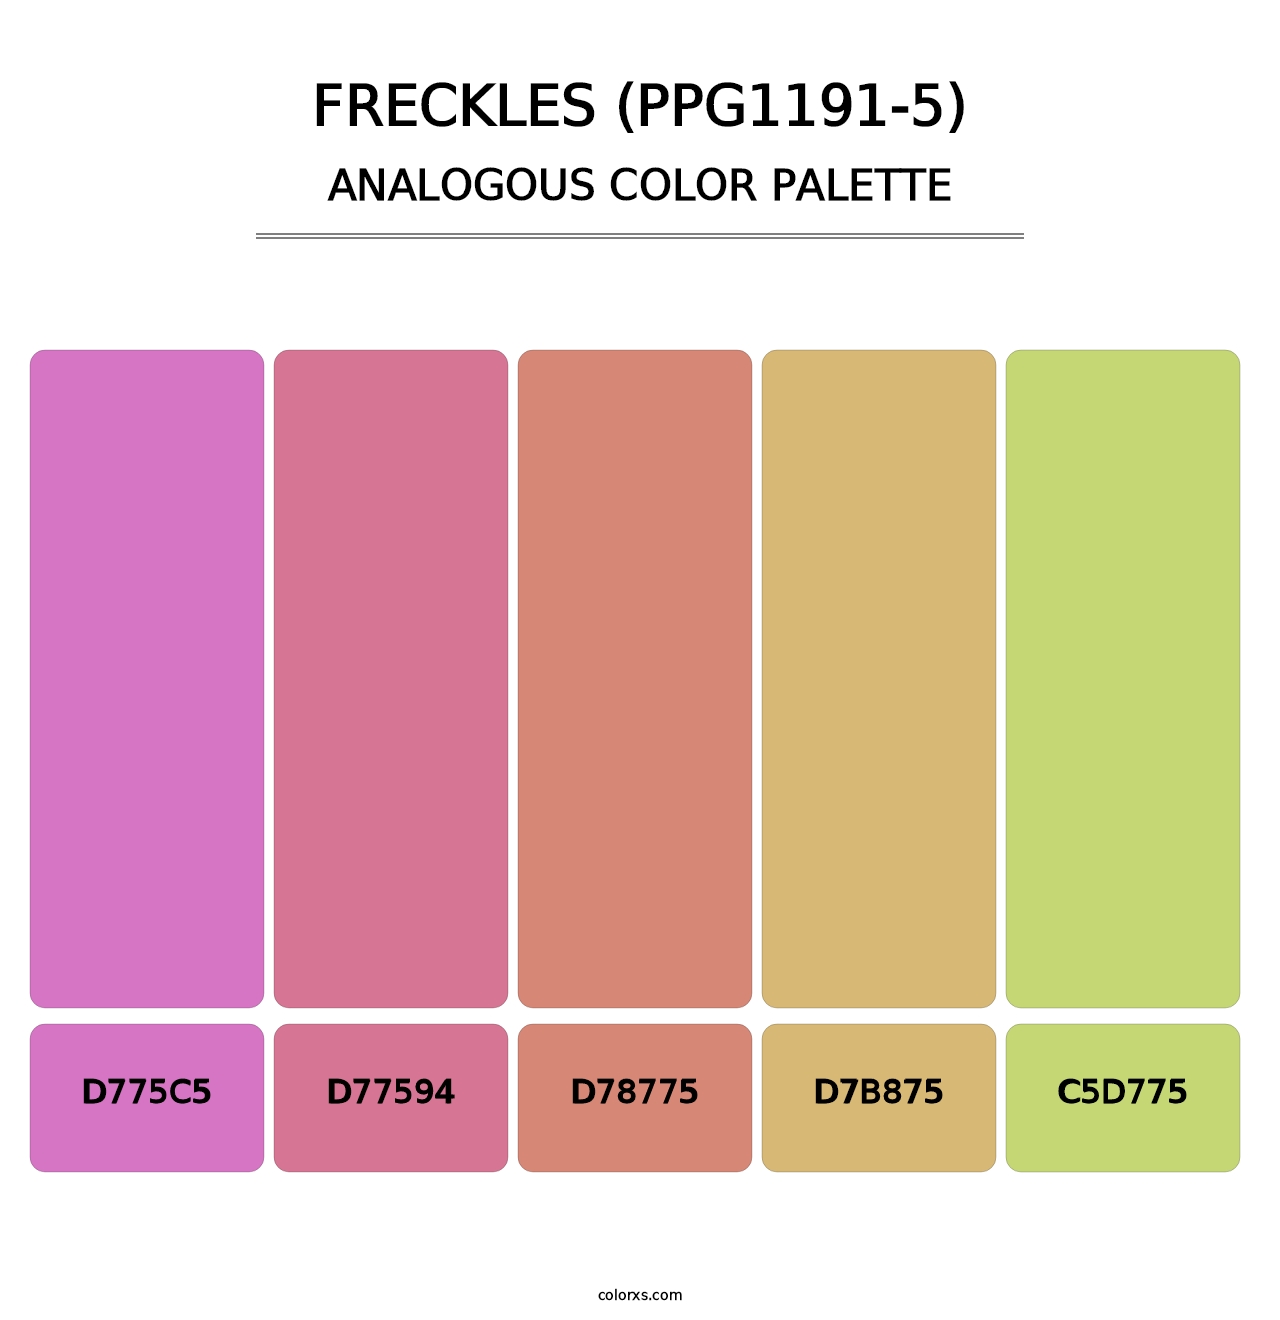 Freckles (PPG1191-5) - Analogous Color Palette